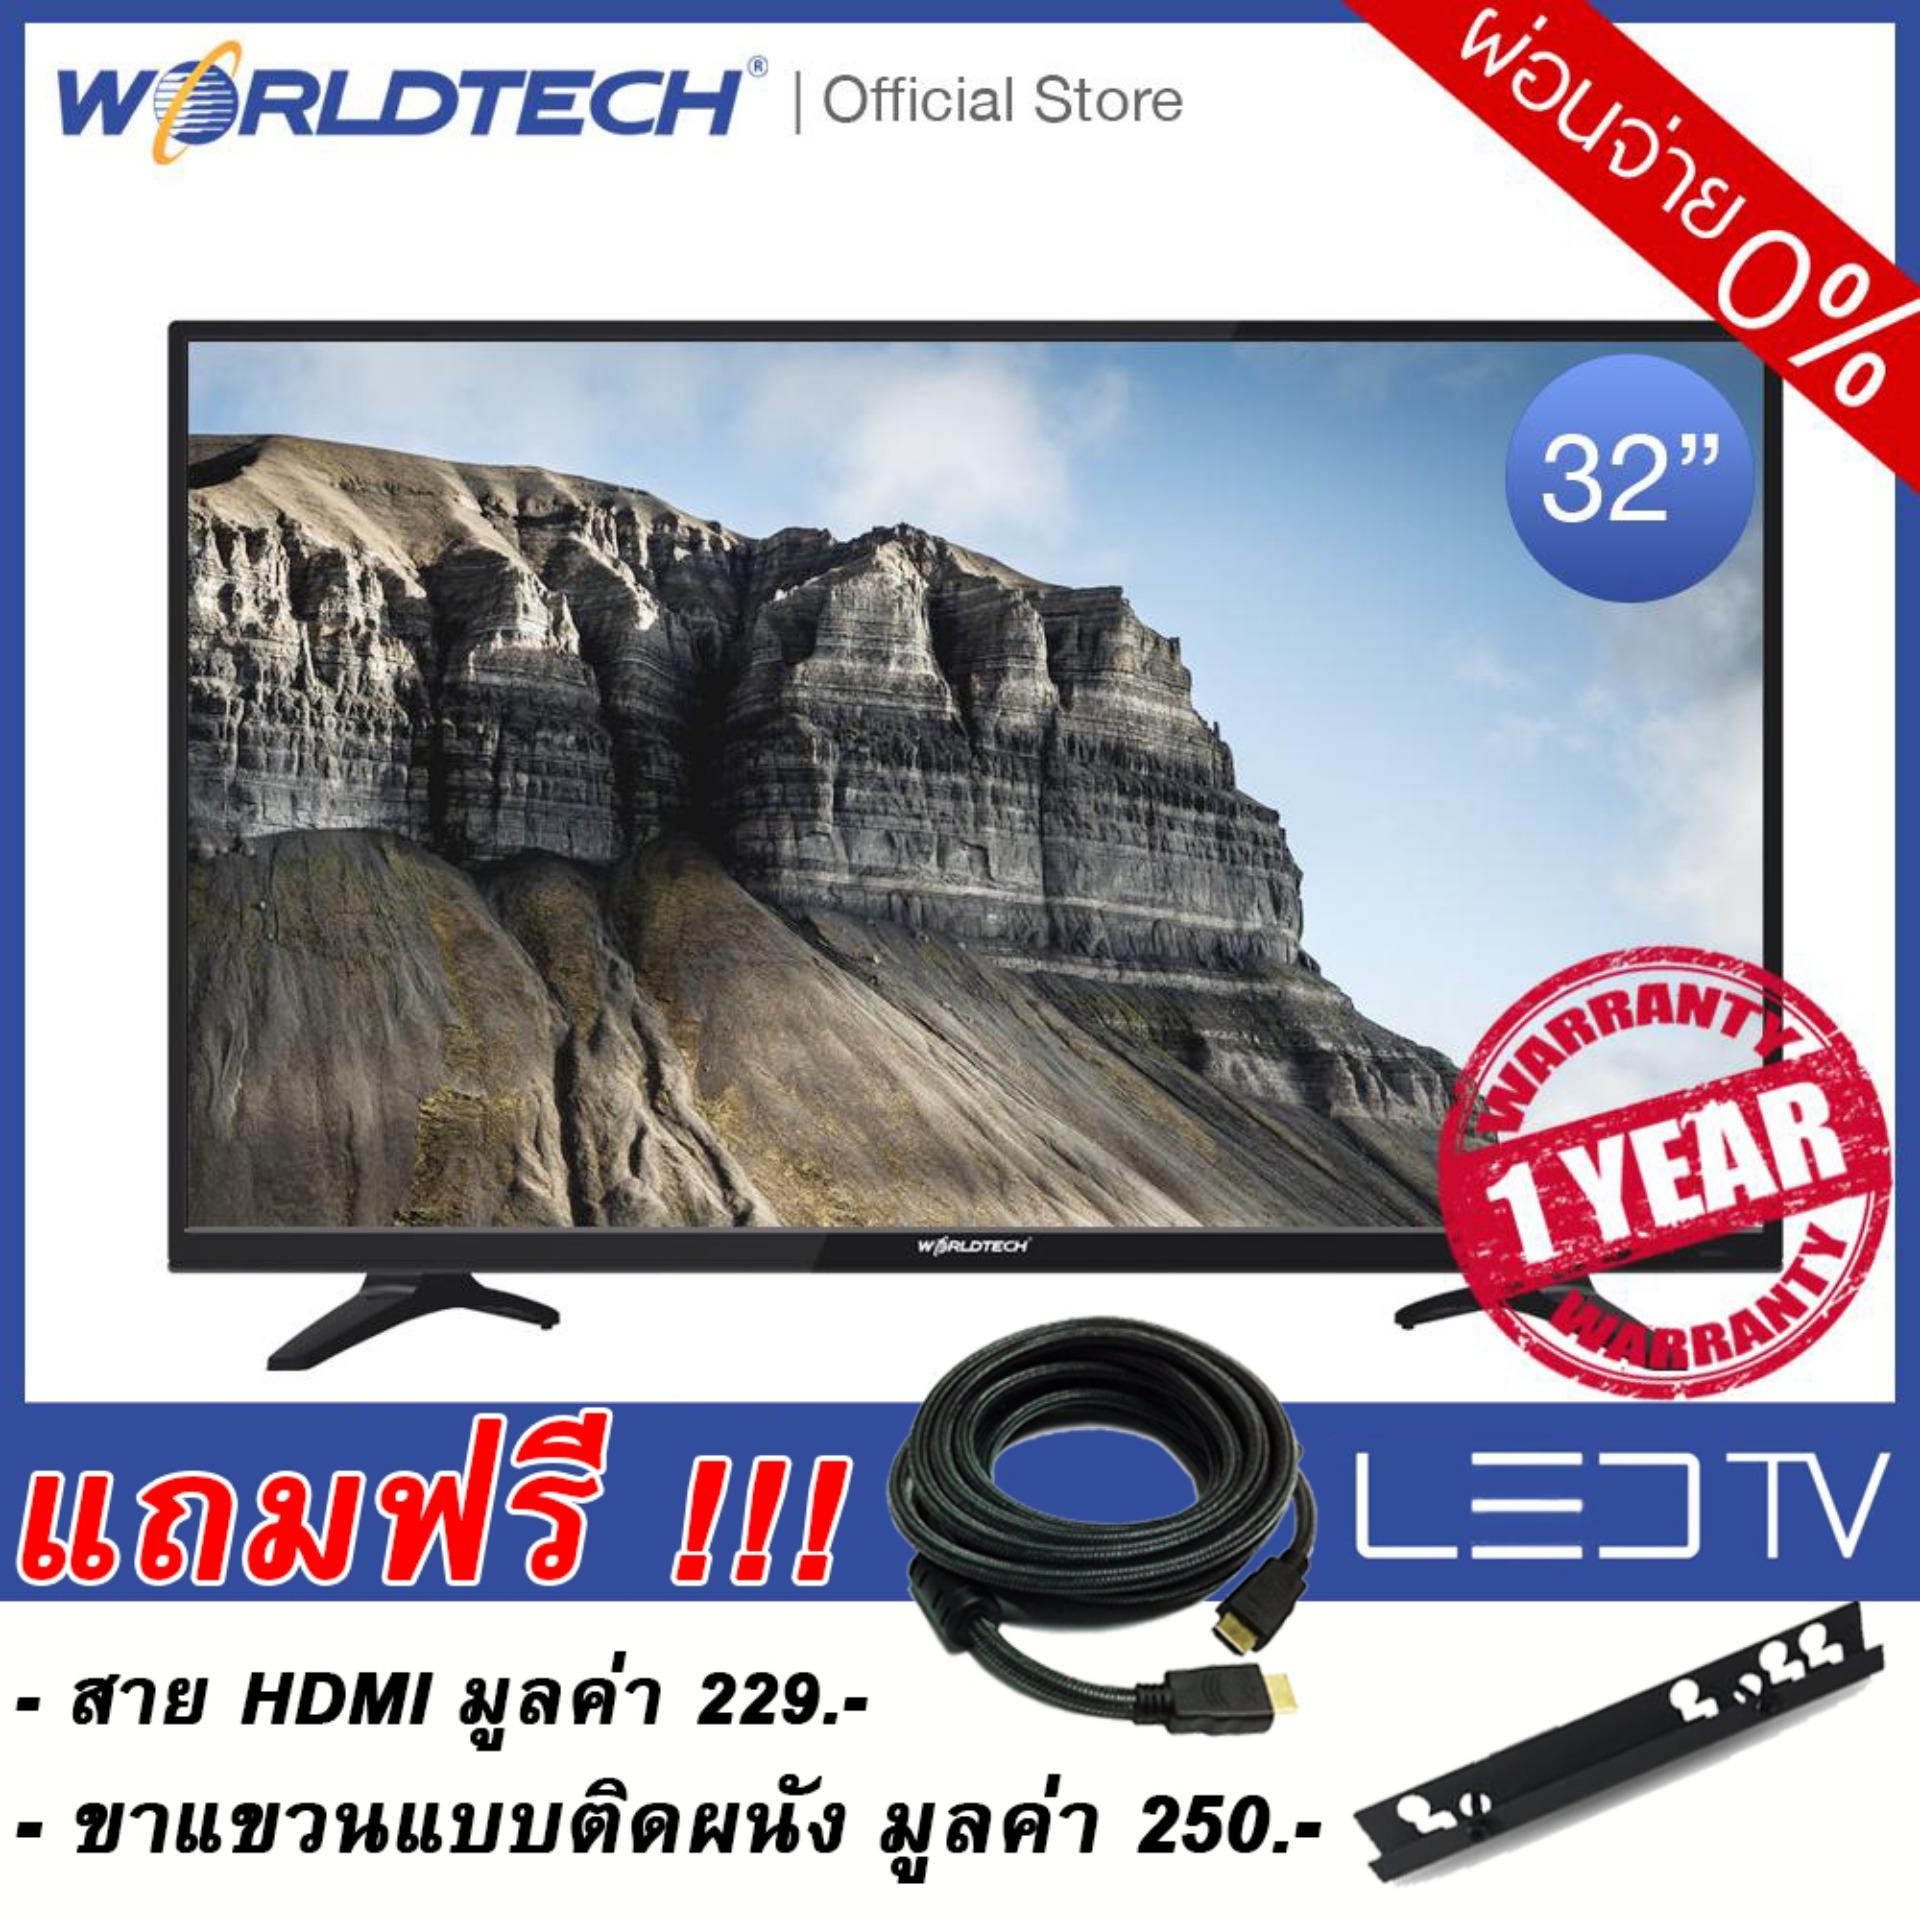 LEDTV (แอลอีดีทีวี) Worldtech ขนาด 32 นิ้ว รุ่น WT-LED3201